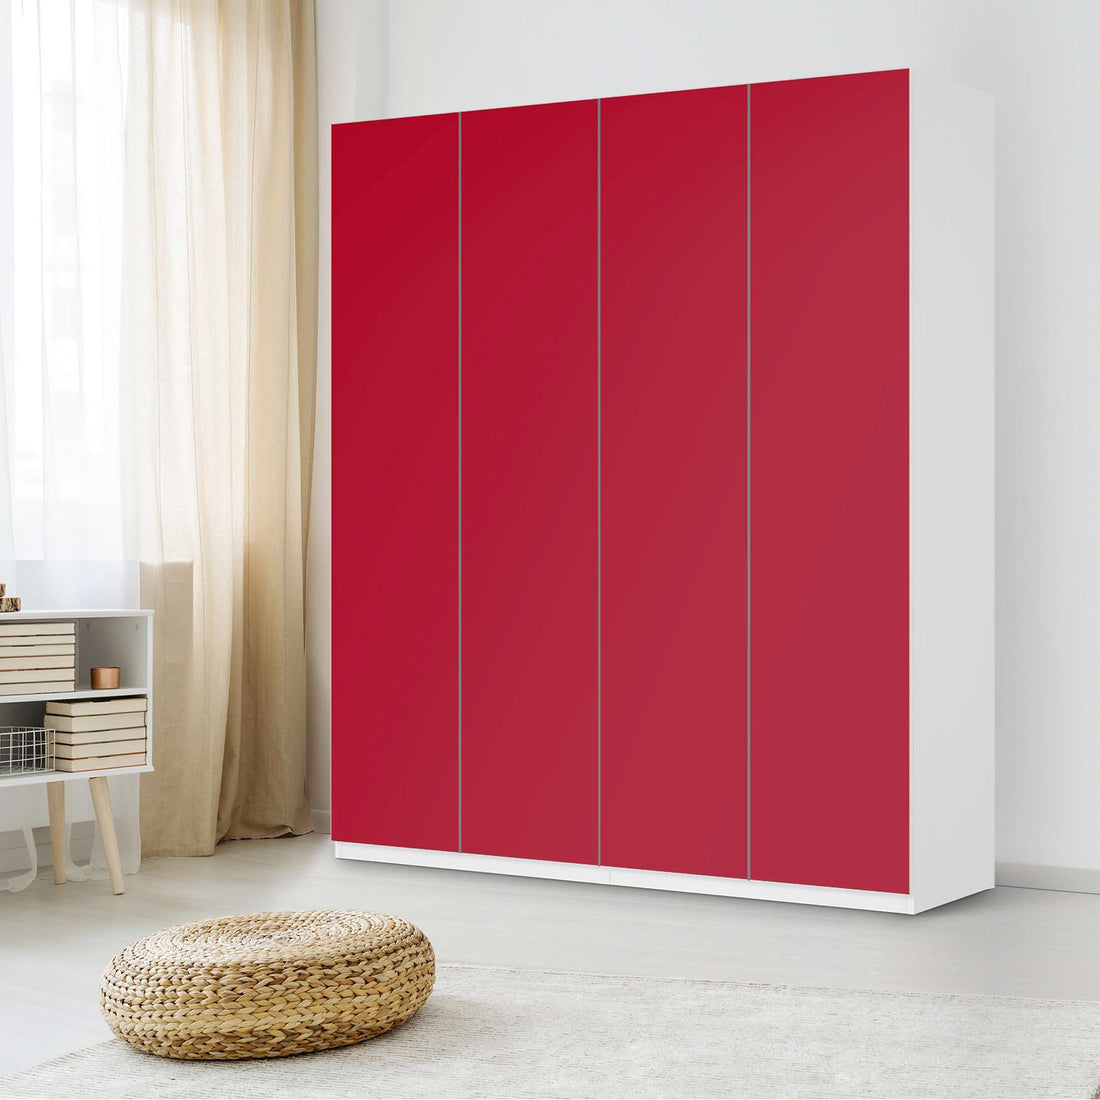 Möbelfolie Rot Dark - IKEA Pax Schrank 236 cm Höhe - 4 Türen - Schlafzimmer